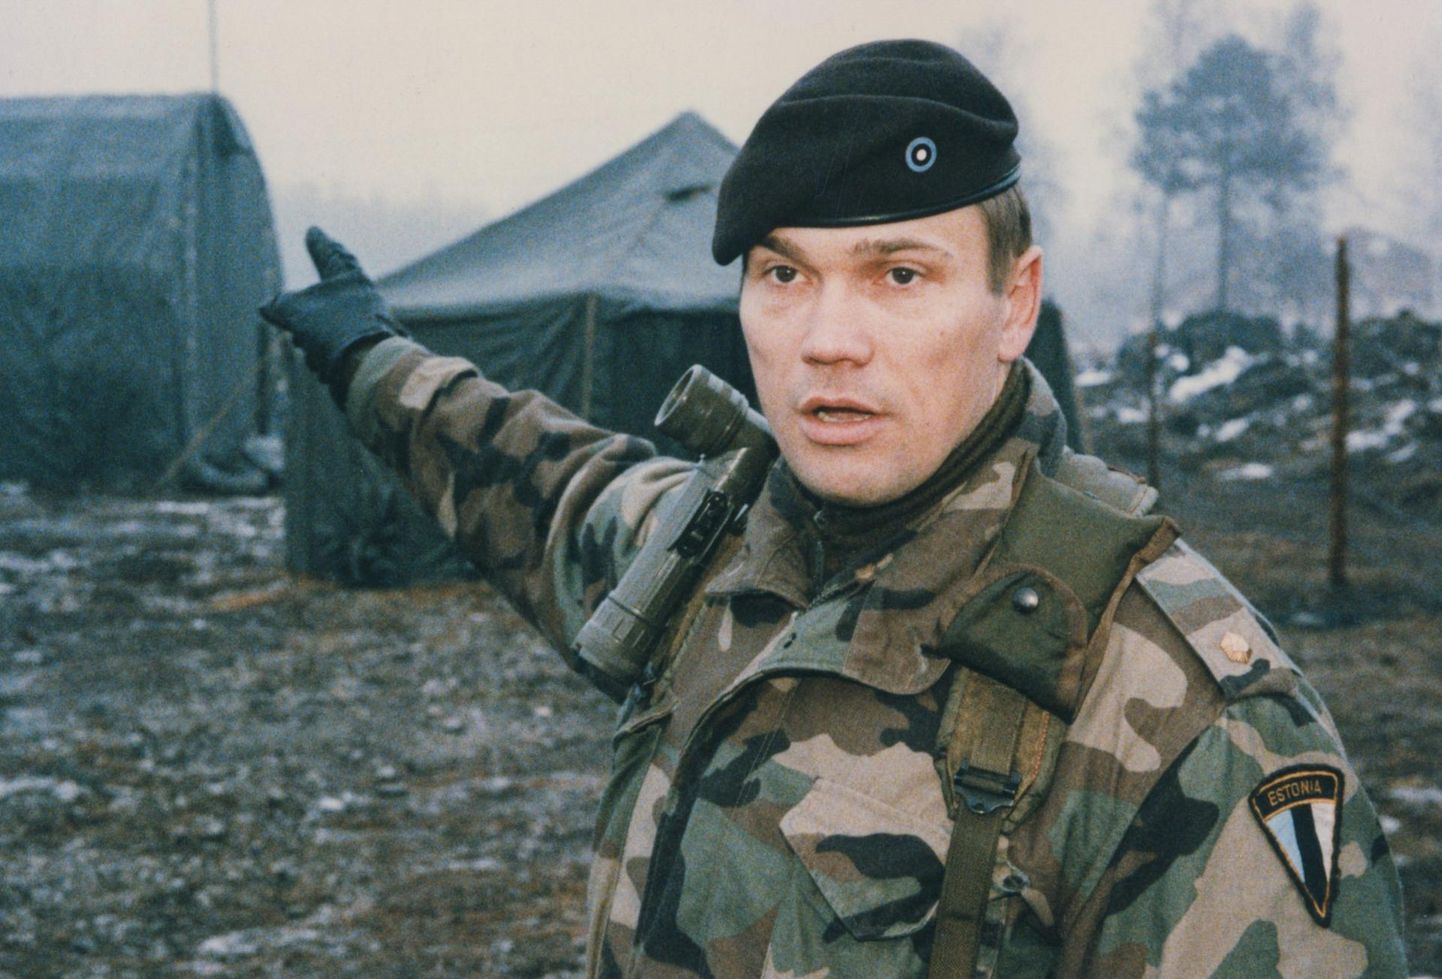 Alar Laneman oli aastatel 1995–1998 Eesti, Läti, Leedu ühise elukutselise üksuse Balti pataljoni (BALTBAT) esimene ülem.